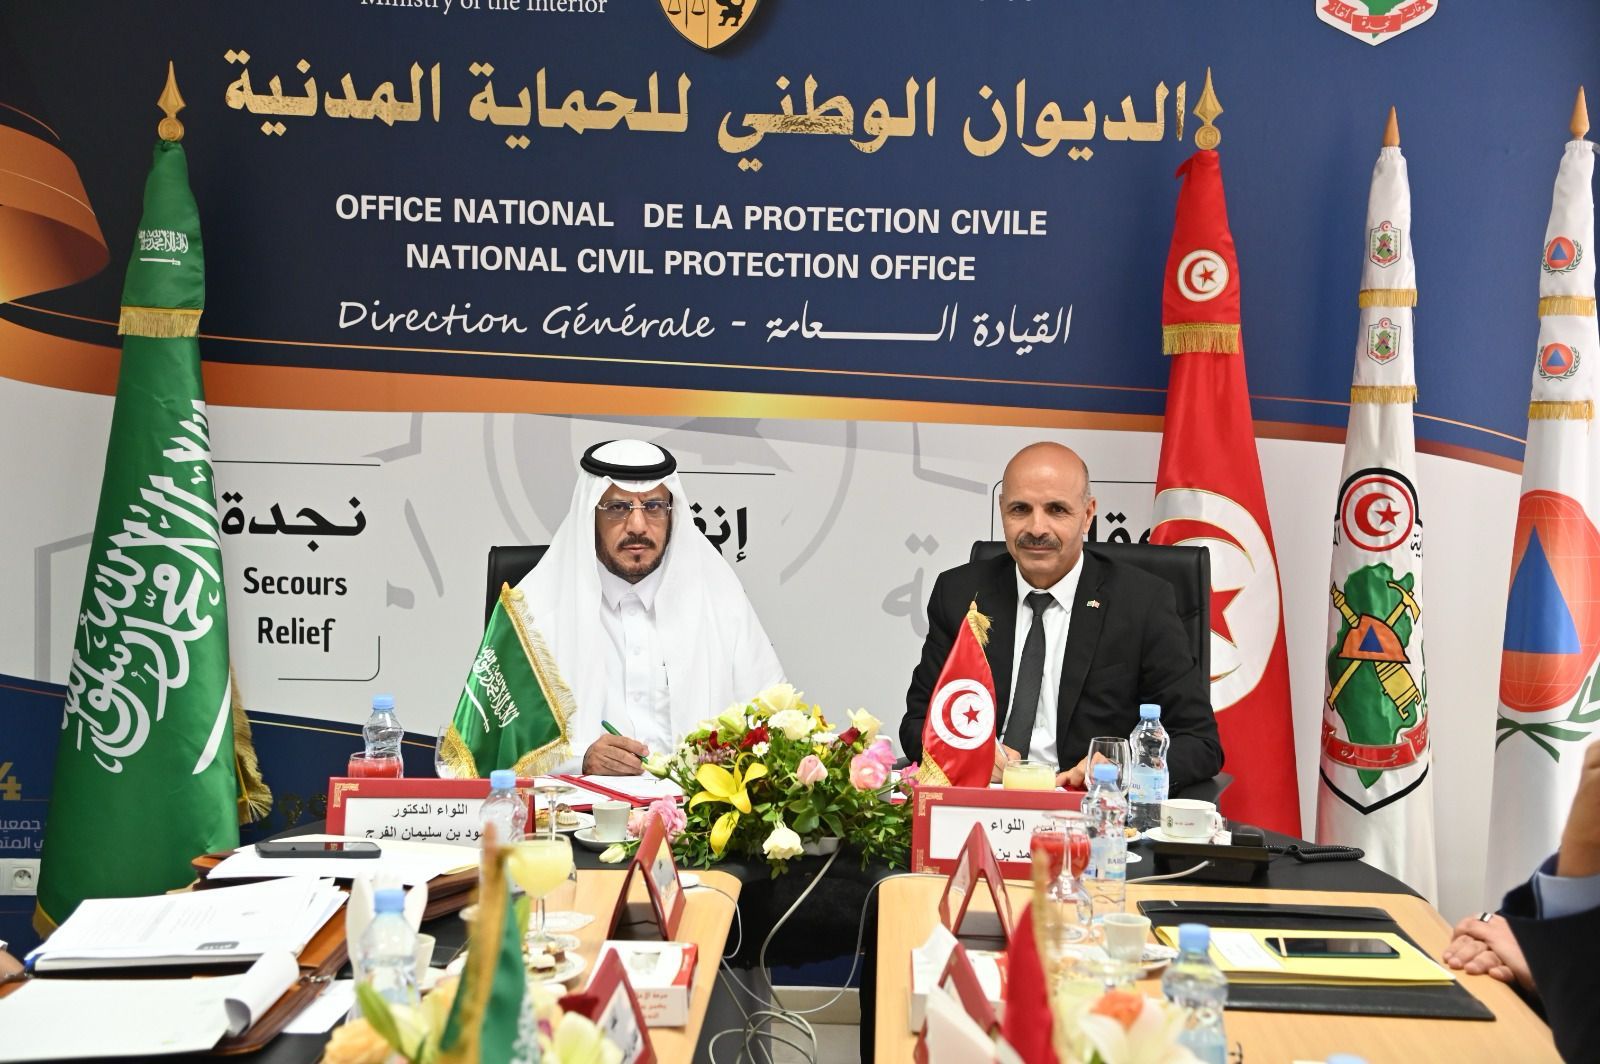 اللواء الفرج يلتقي مدير الديوان الوطني للحماية المدنية بالجمهورية التونسية